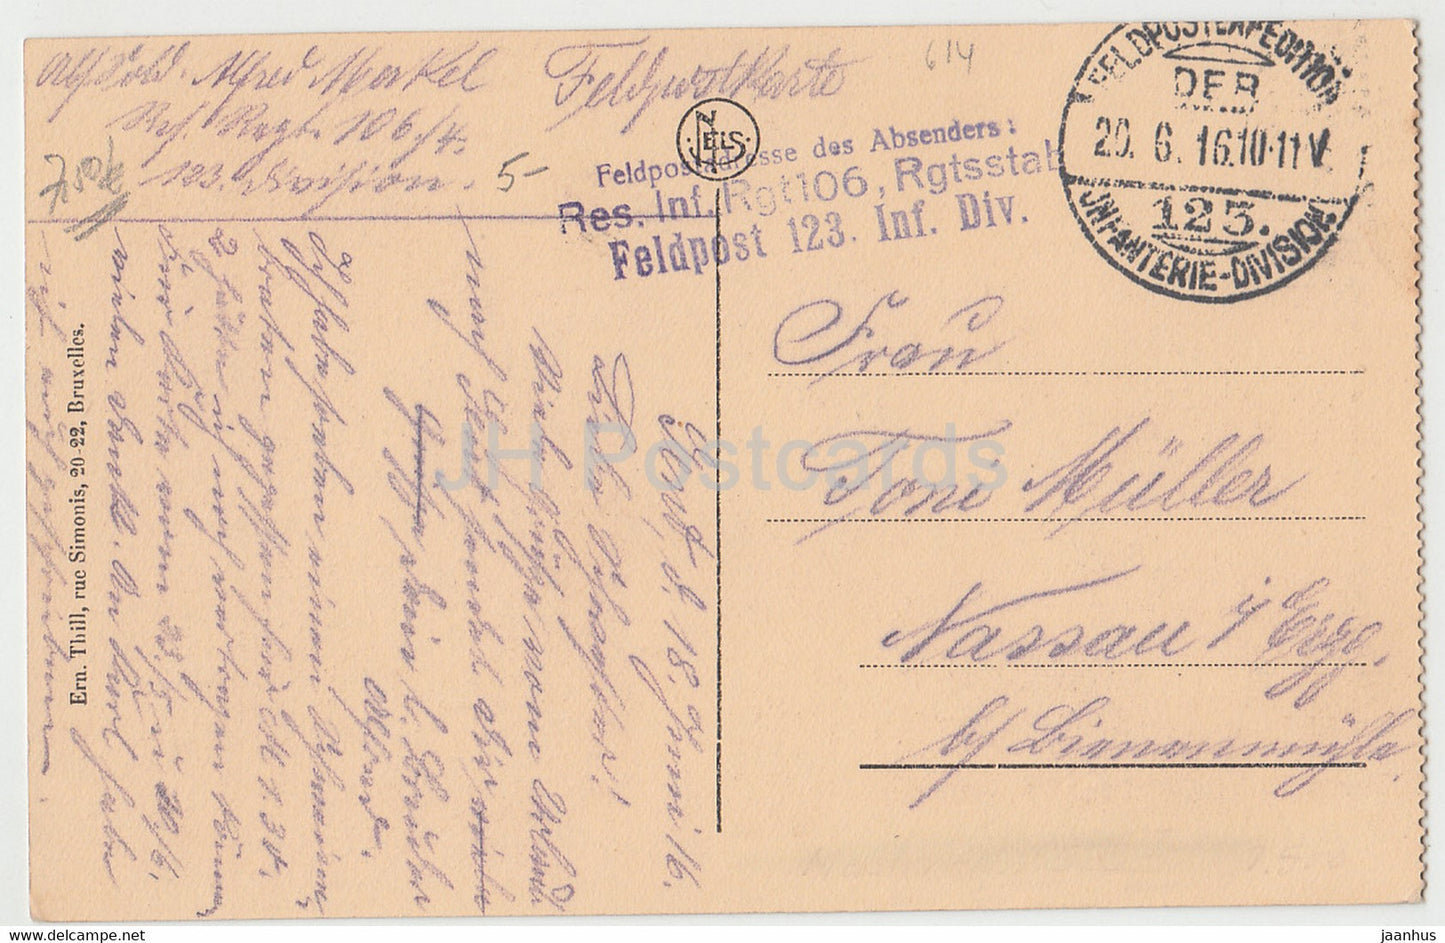 Gand - Gent - Beffroi Eglise St Nicolas et Panorama - Res Inf Rgt 106 - Feldpost - alte Postkarte - 1916 - Belgien - gebraucht